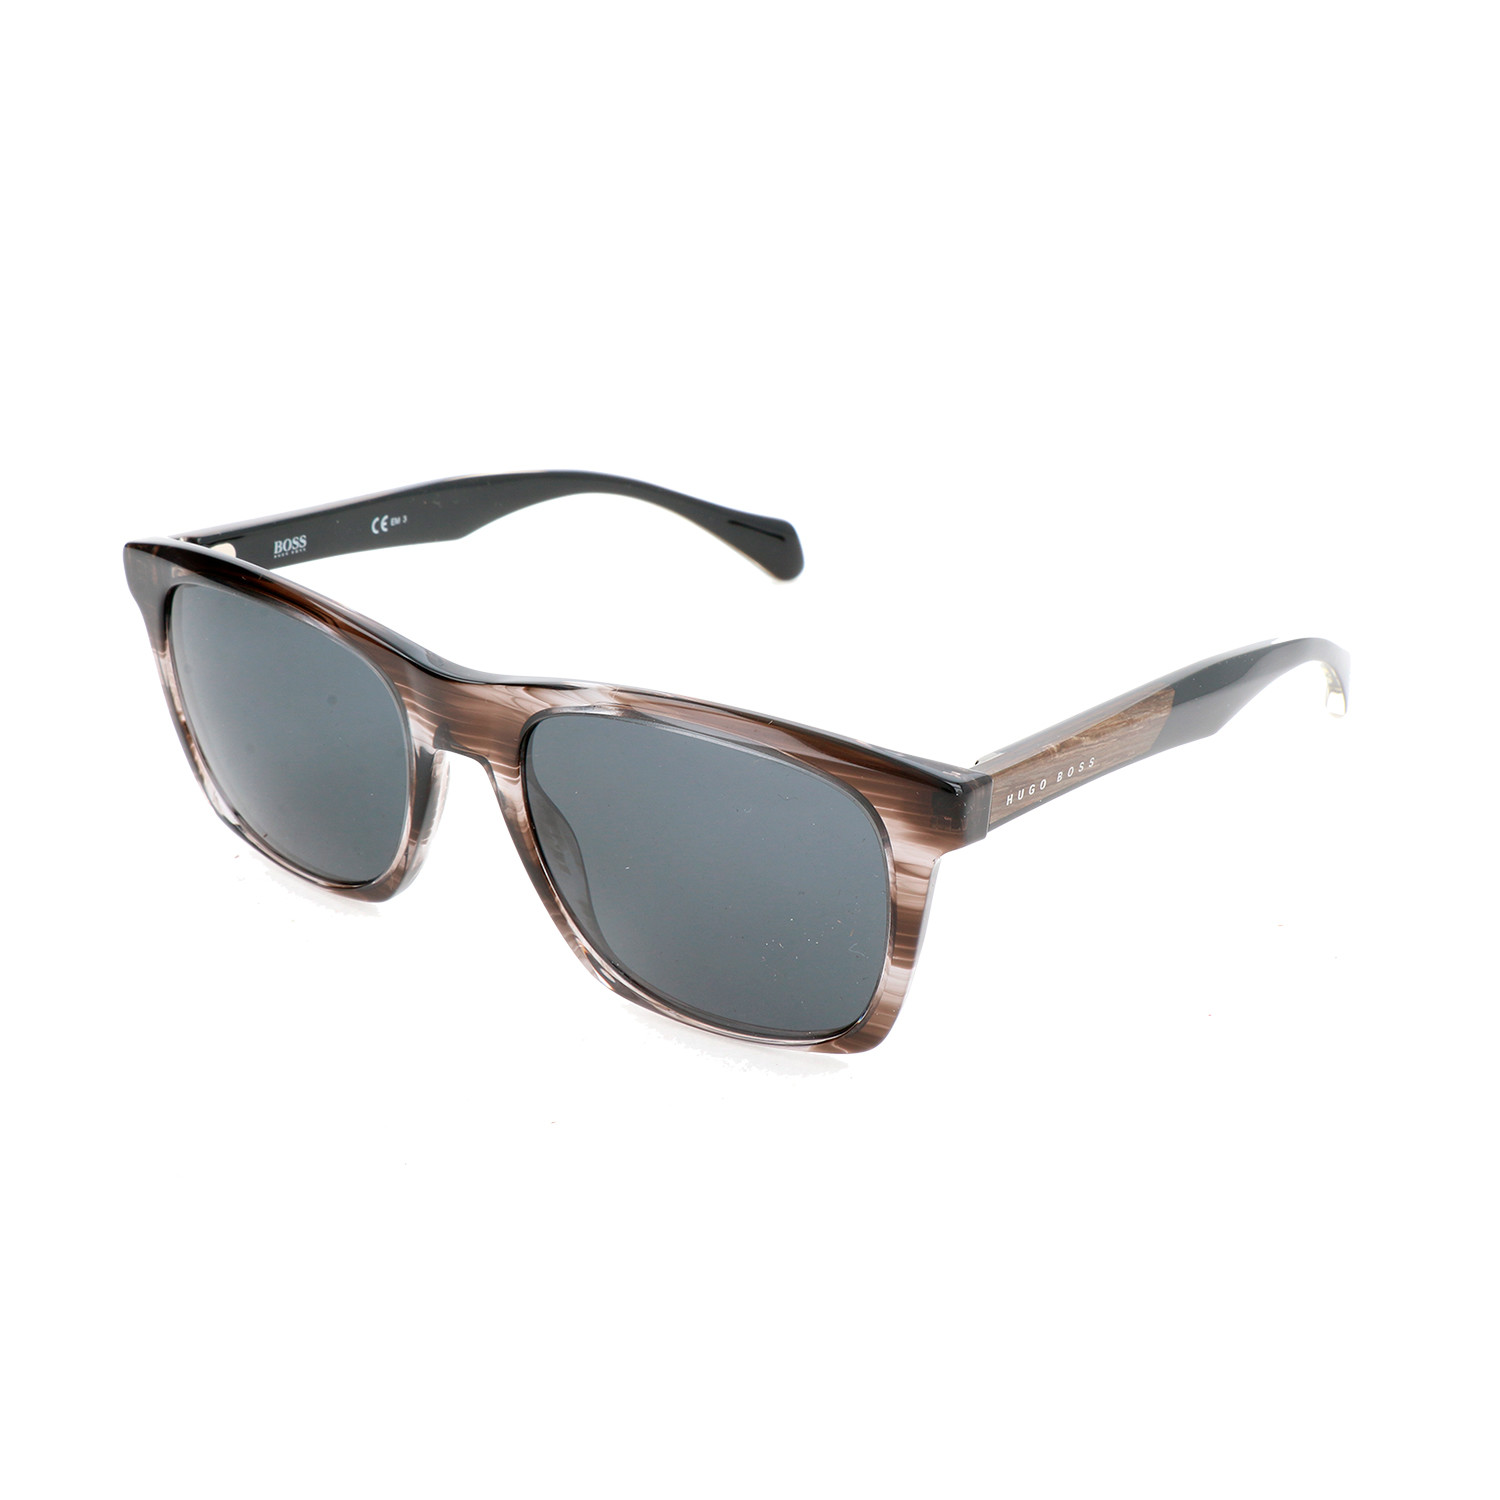 Hugo Boss // Men's 0911 Sunglasses // Striped Brown + Gray - Designer ...